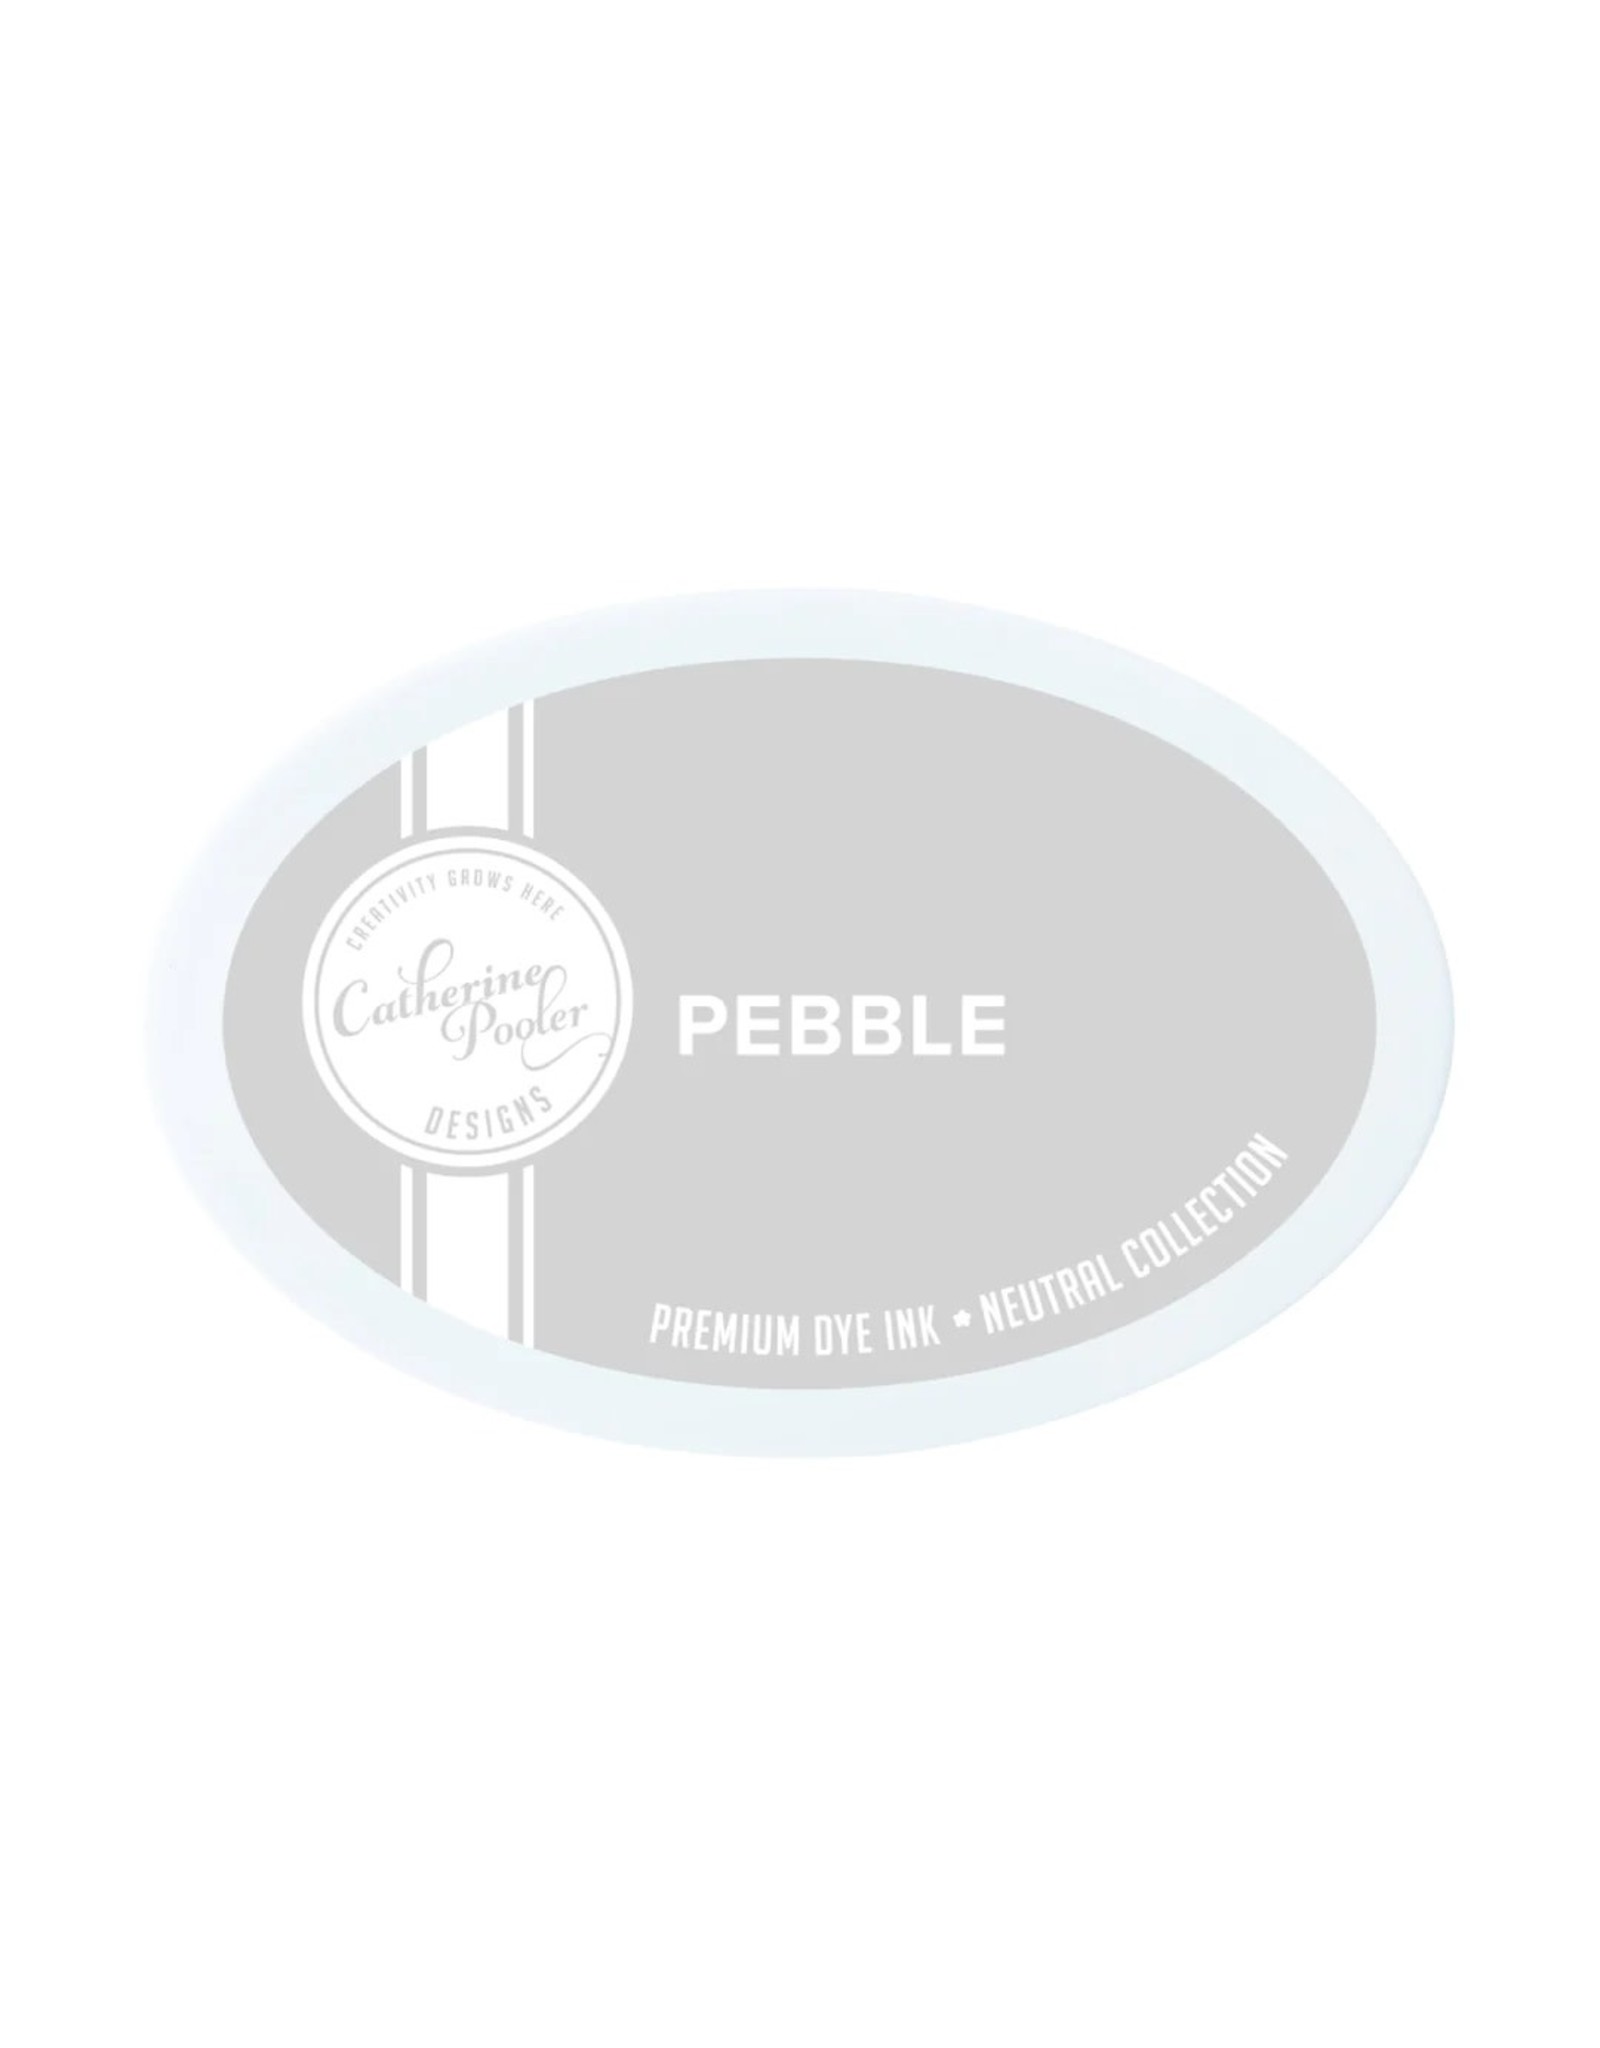 Catherine Pooler Designs Pebble Ink Pad